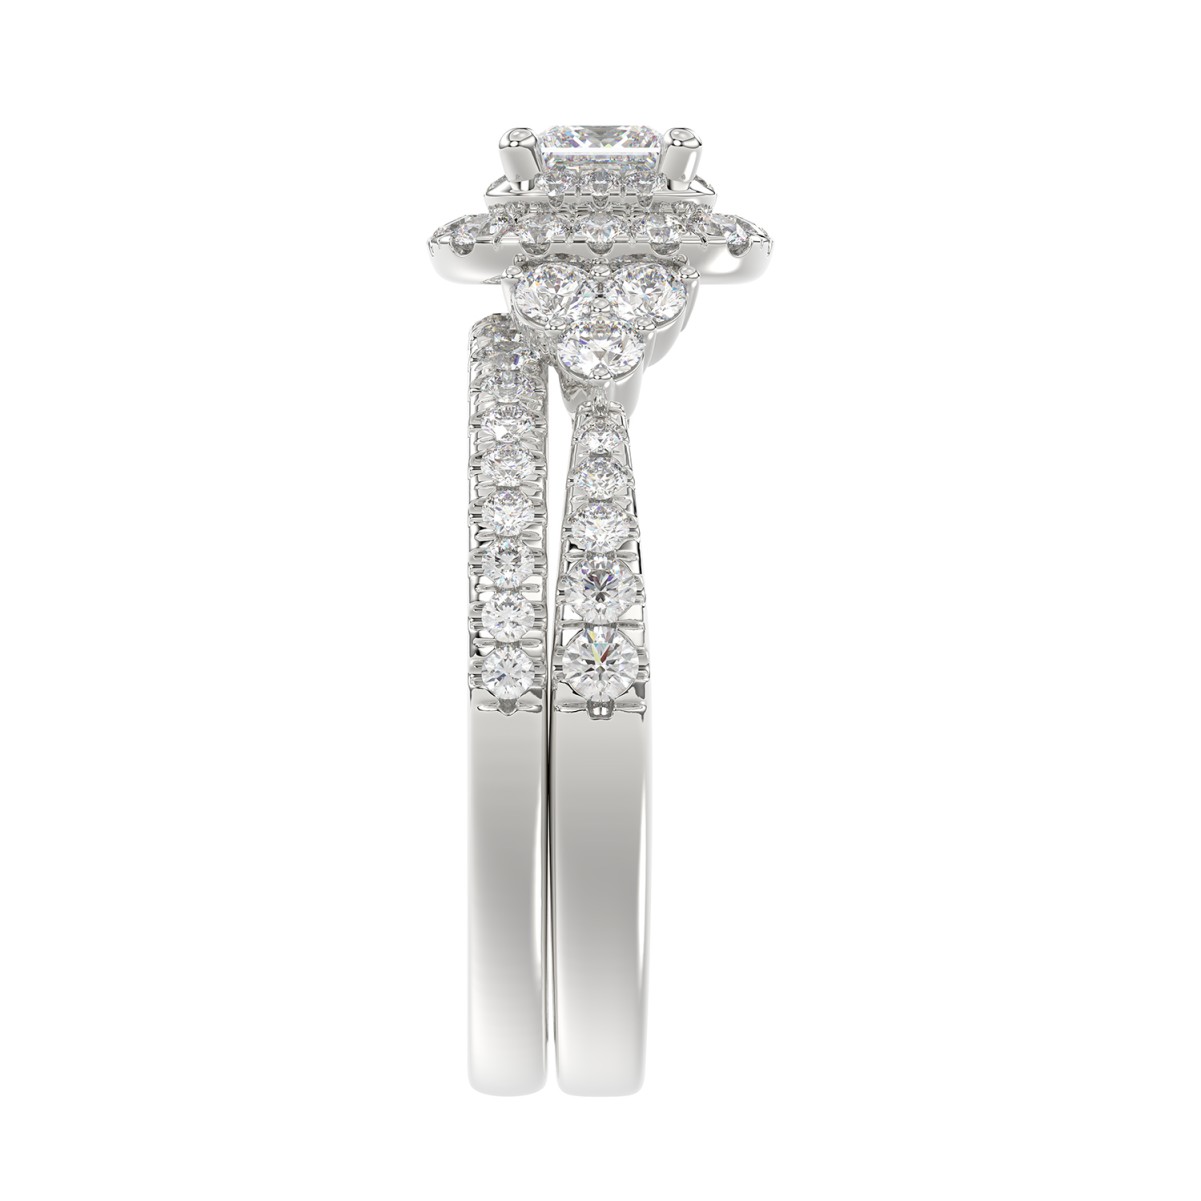 14K WHITE GOLD 1 1/2CT ROUND/PRINCESS DIAMOND LADIES BRIDAL SET(CENTER STONE PRINCESS DIAMOND 1/2CT)